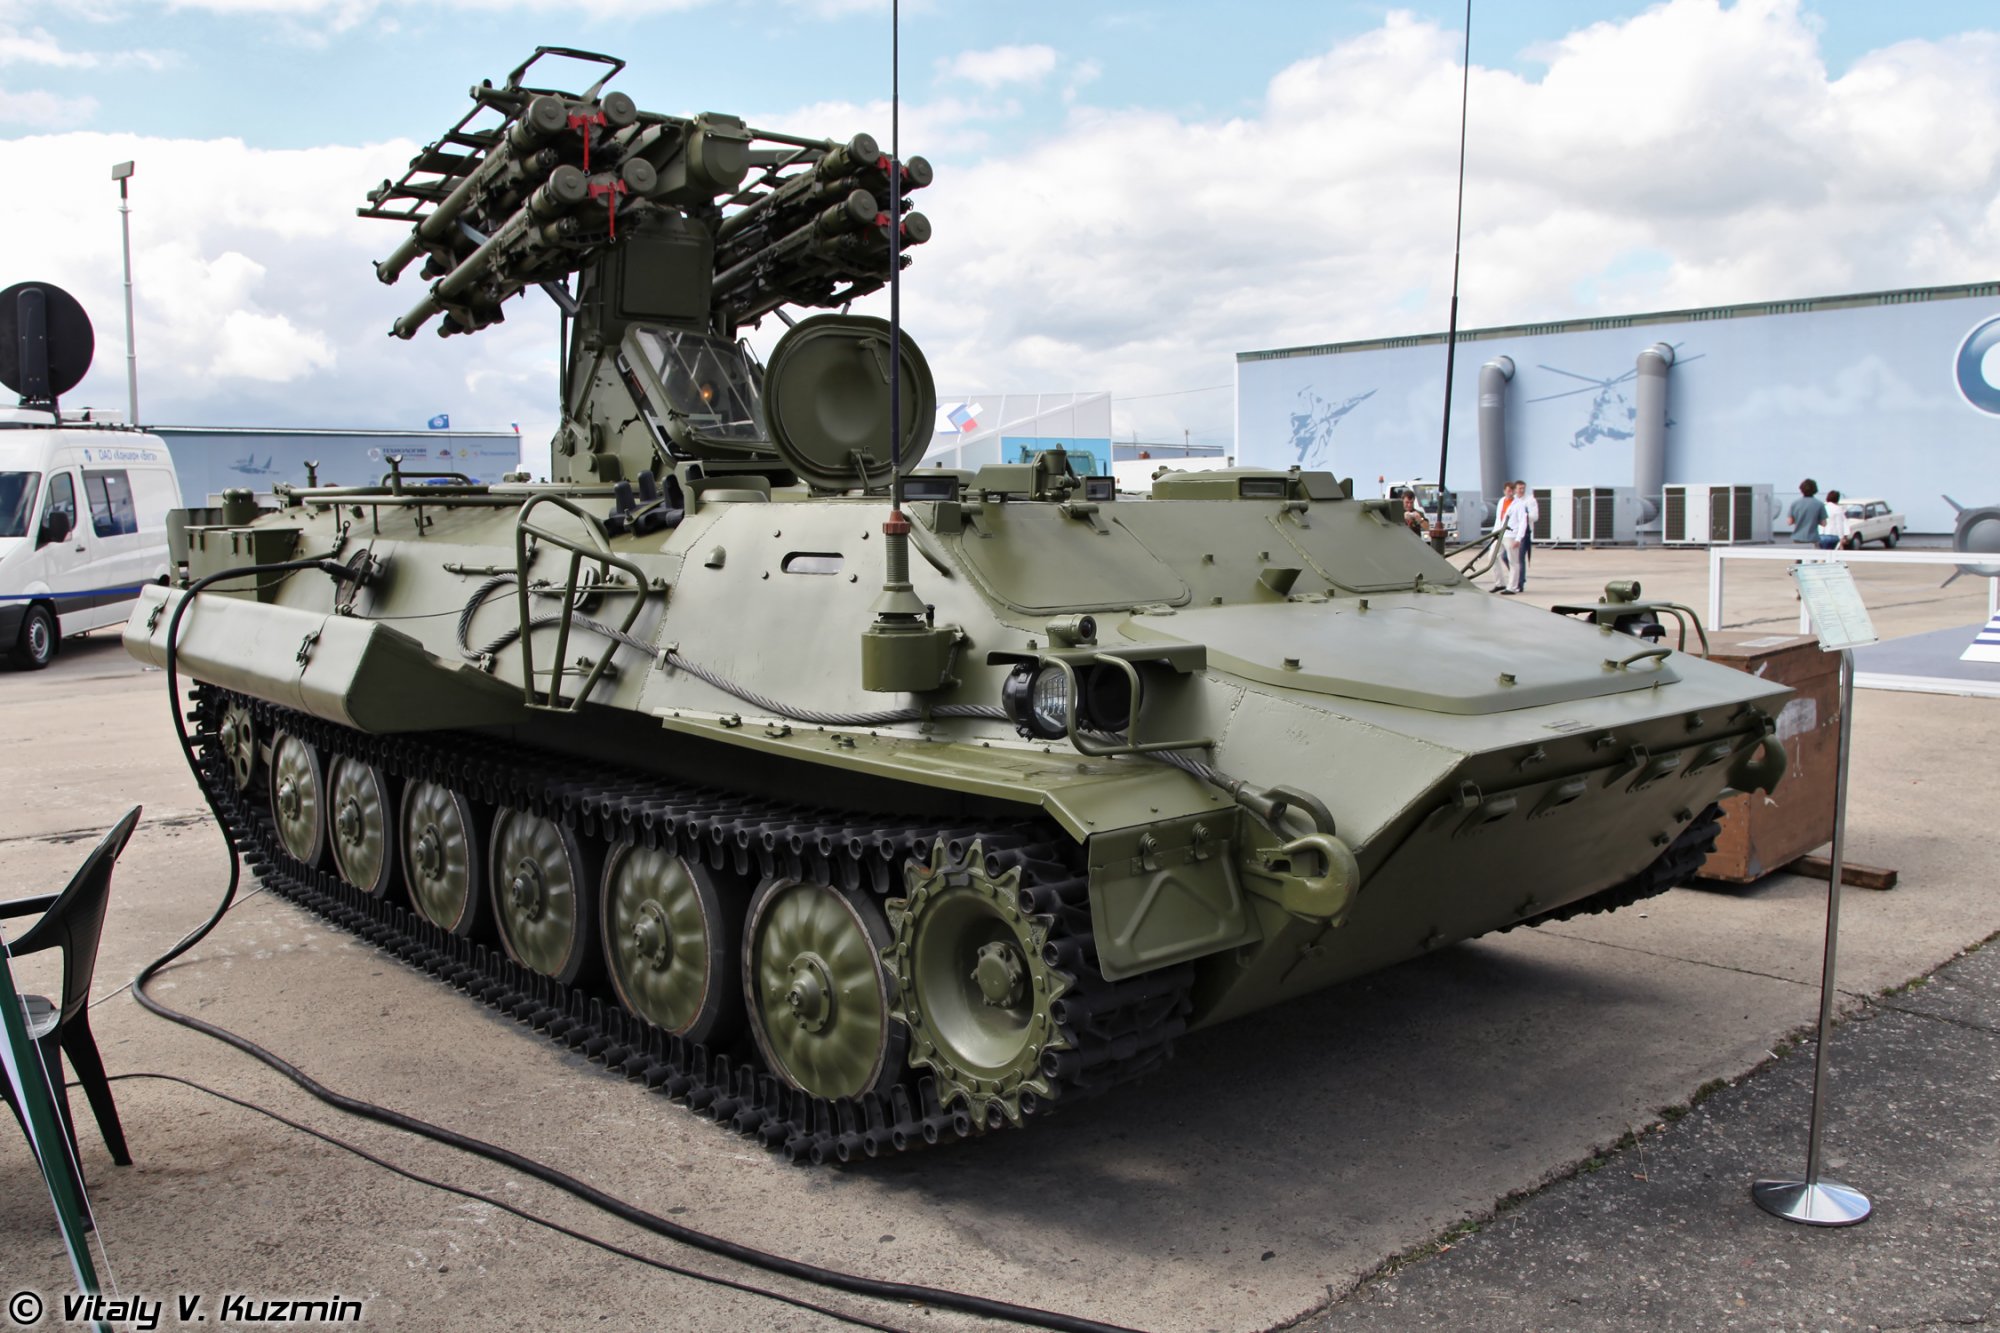 Поблизу Донецька росіяни випробують нову зброю - ЗРК "Лучник-Е" (ФОТО) - фото 1